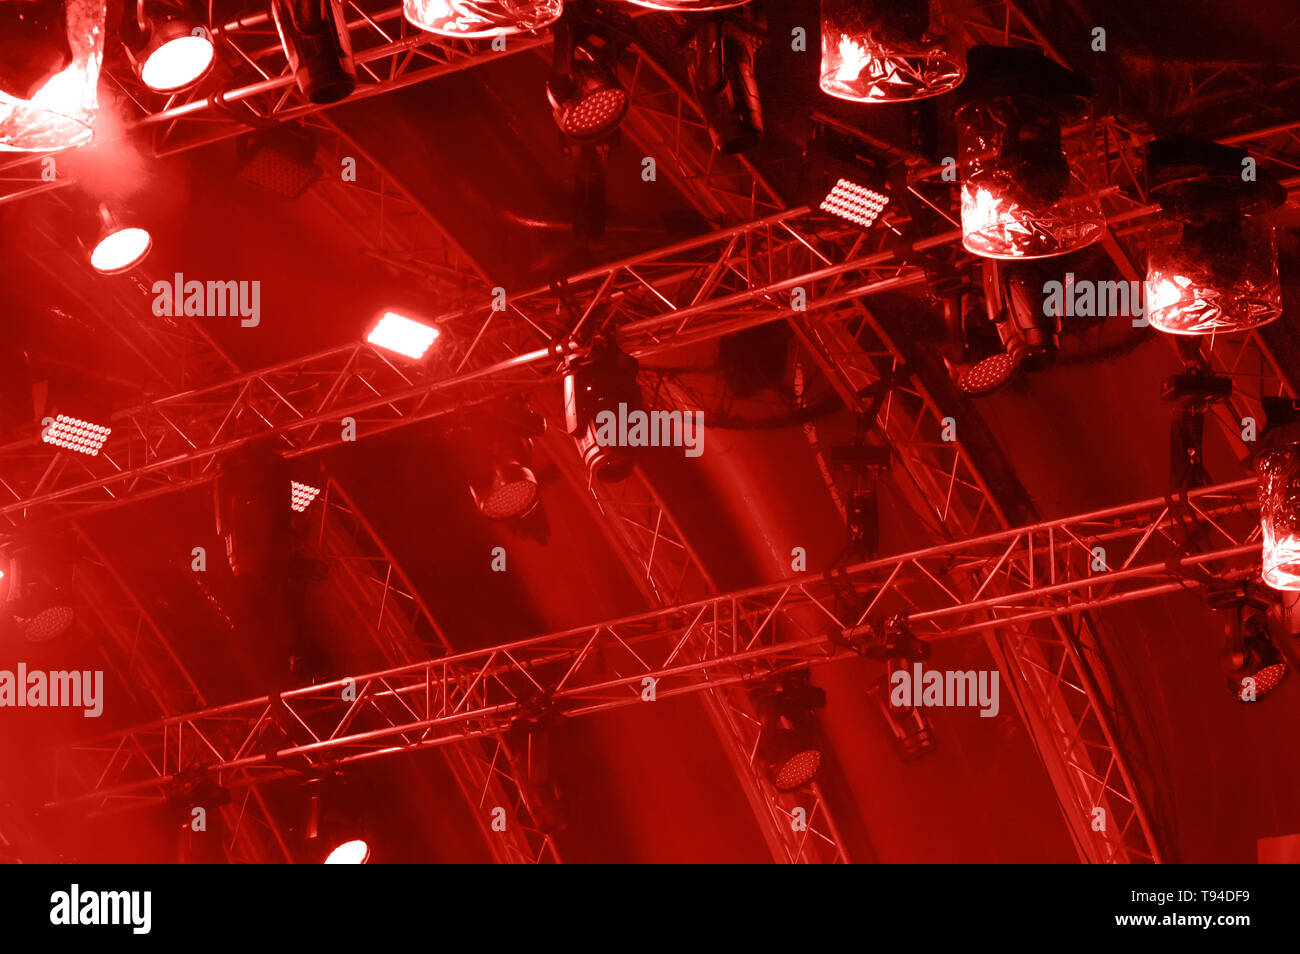 Concerto colorata illuminazione. Colore rosso illuminazione concerto su uno sfondo scuro al di sopra di schermo del proiettore. Foto Stock